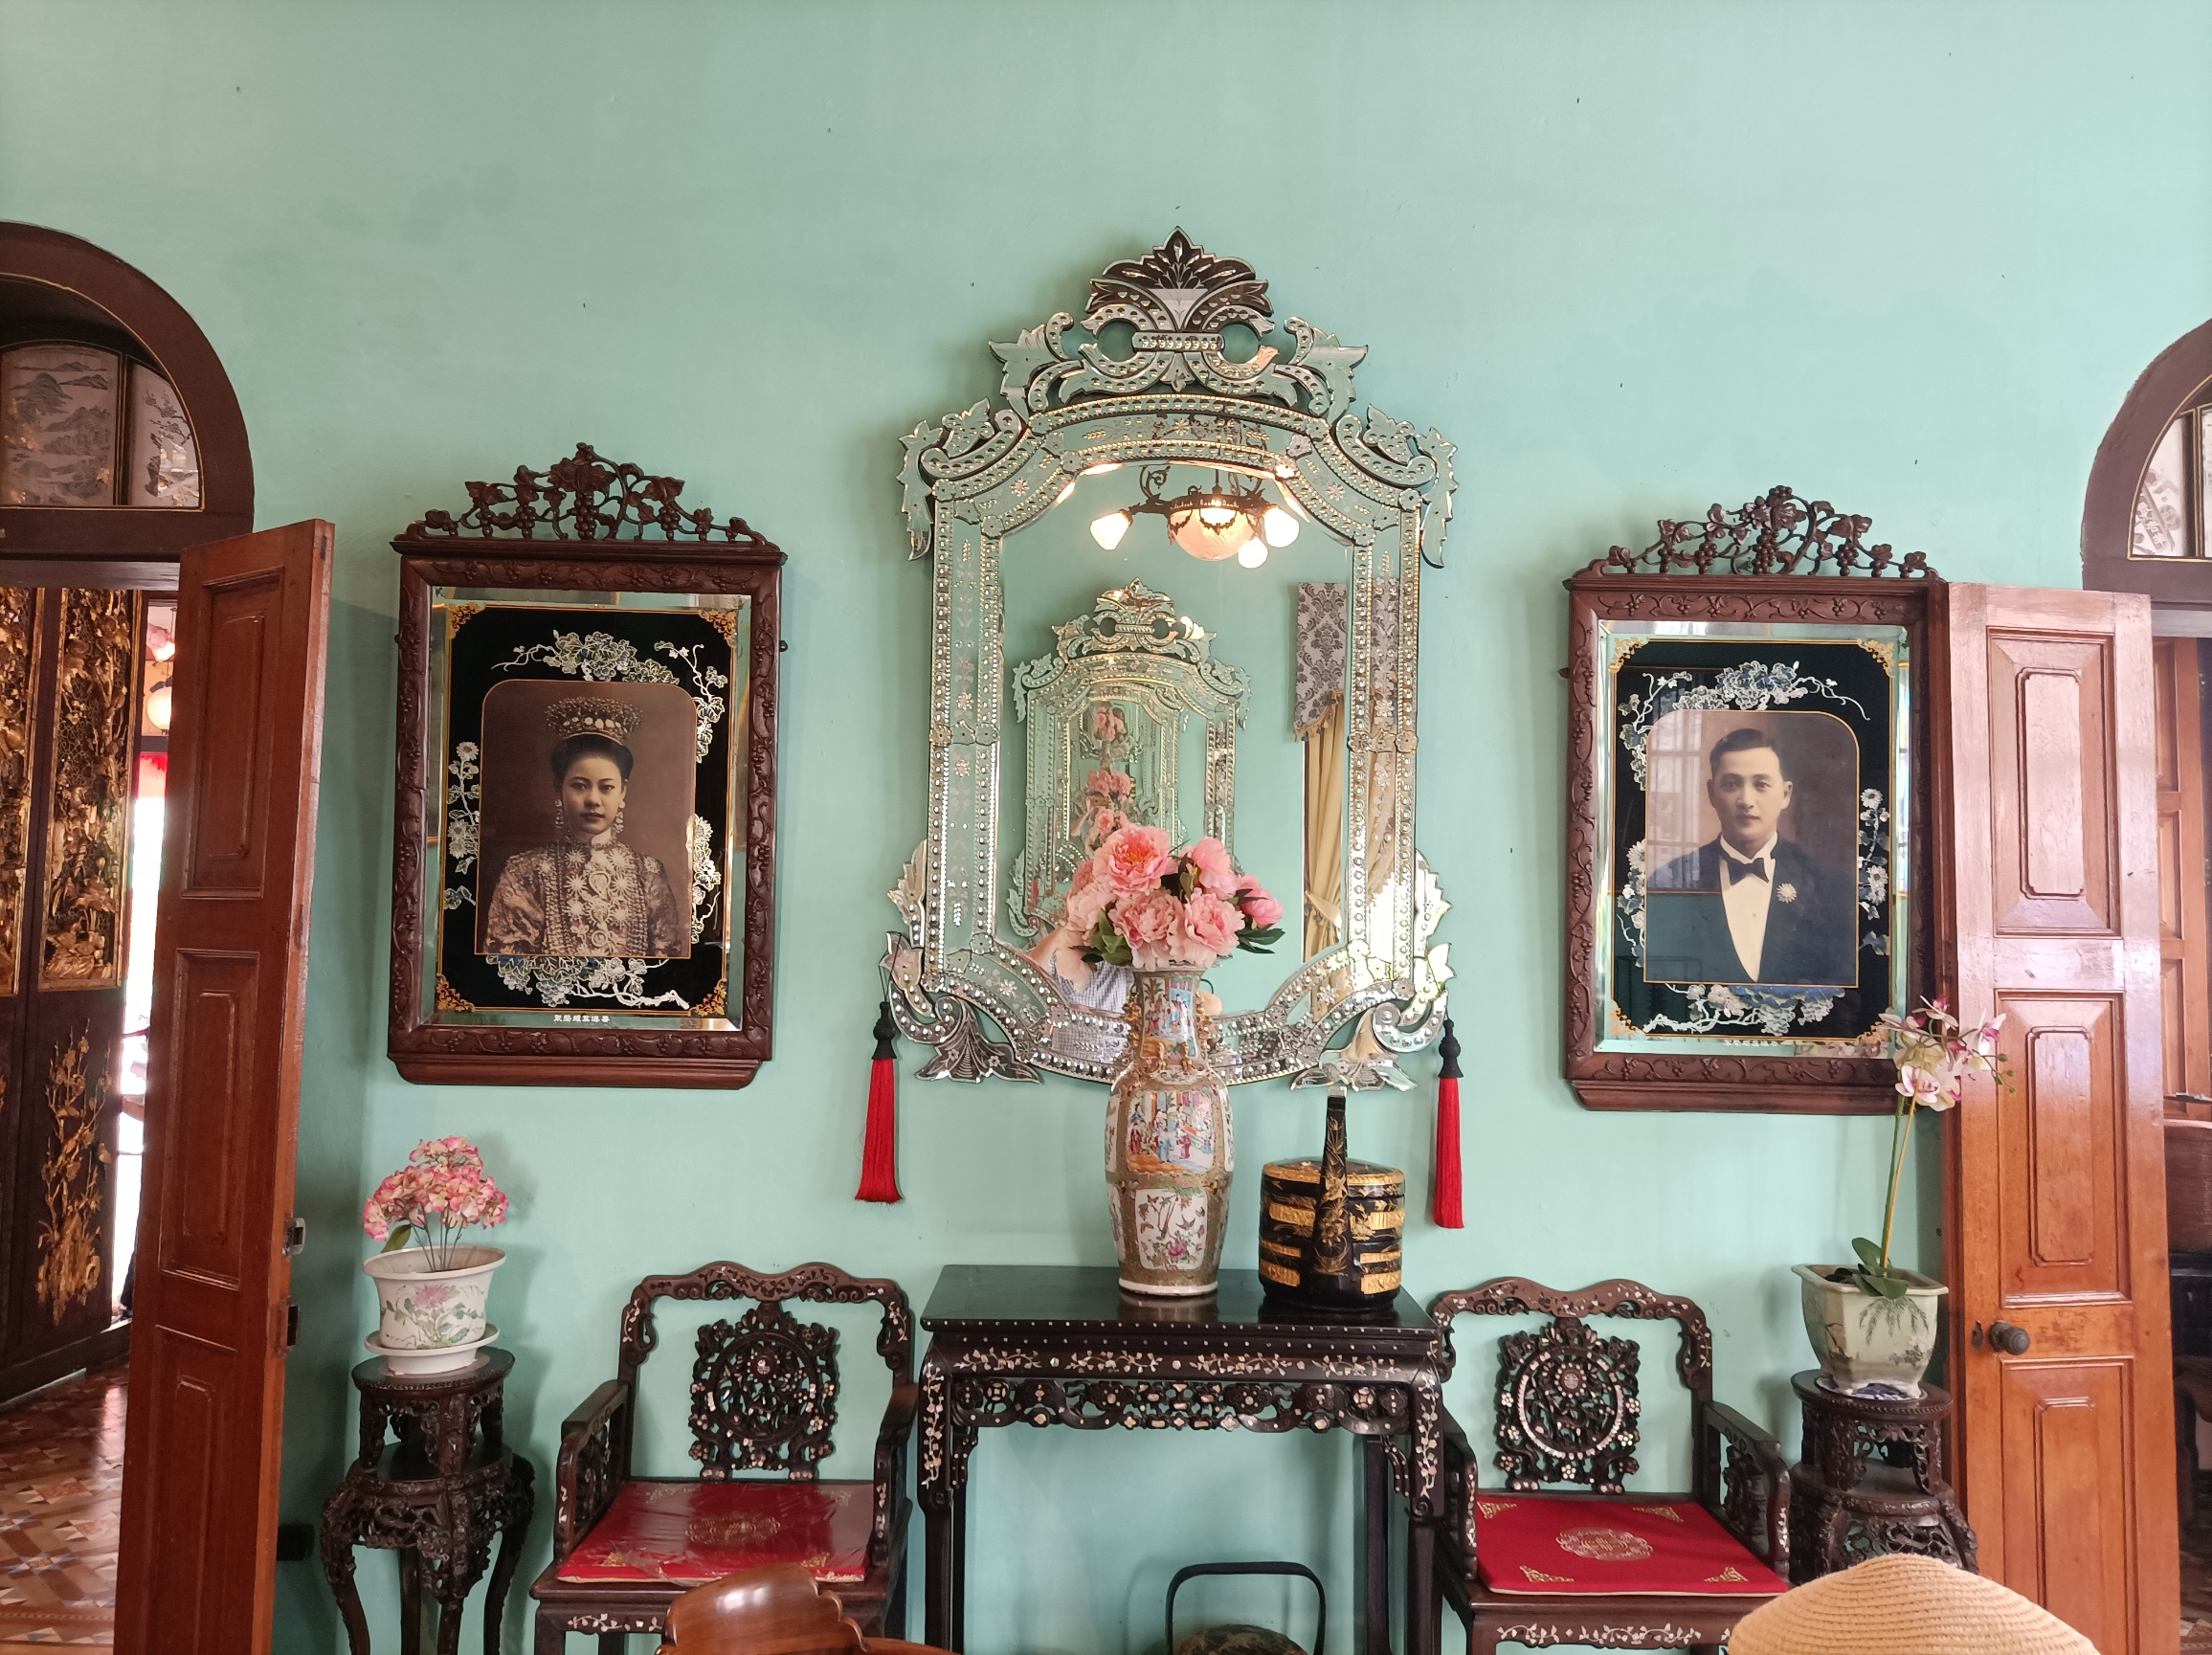 娘惹博物馆，也叫槟城侨生博物馆，是当地一位有名的峇峇家族的祖屋，现在的主人已经是第四代峇峇，把祖屋拿